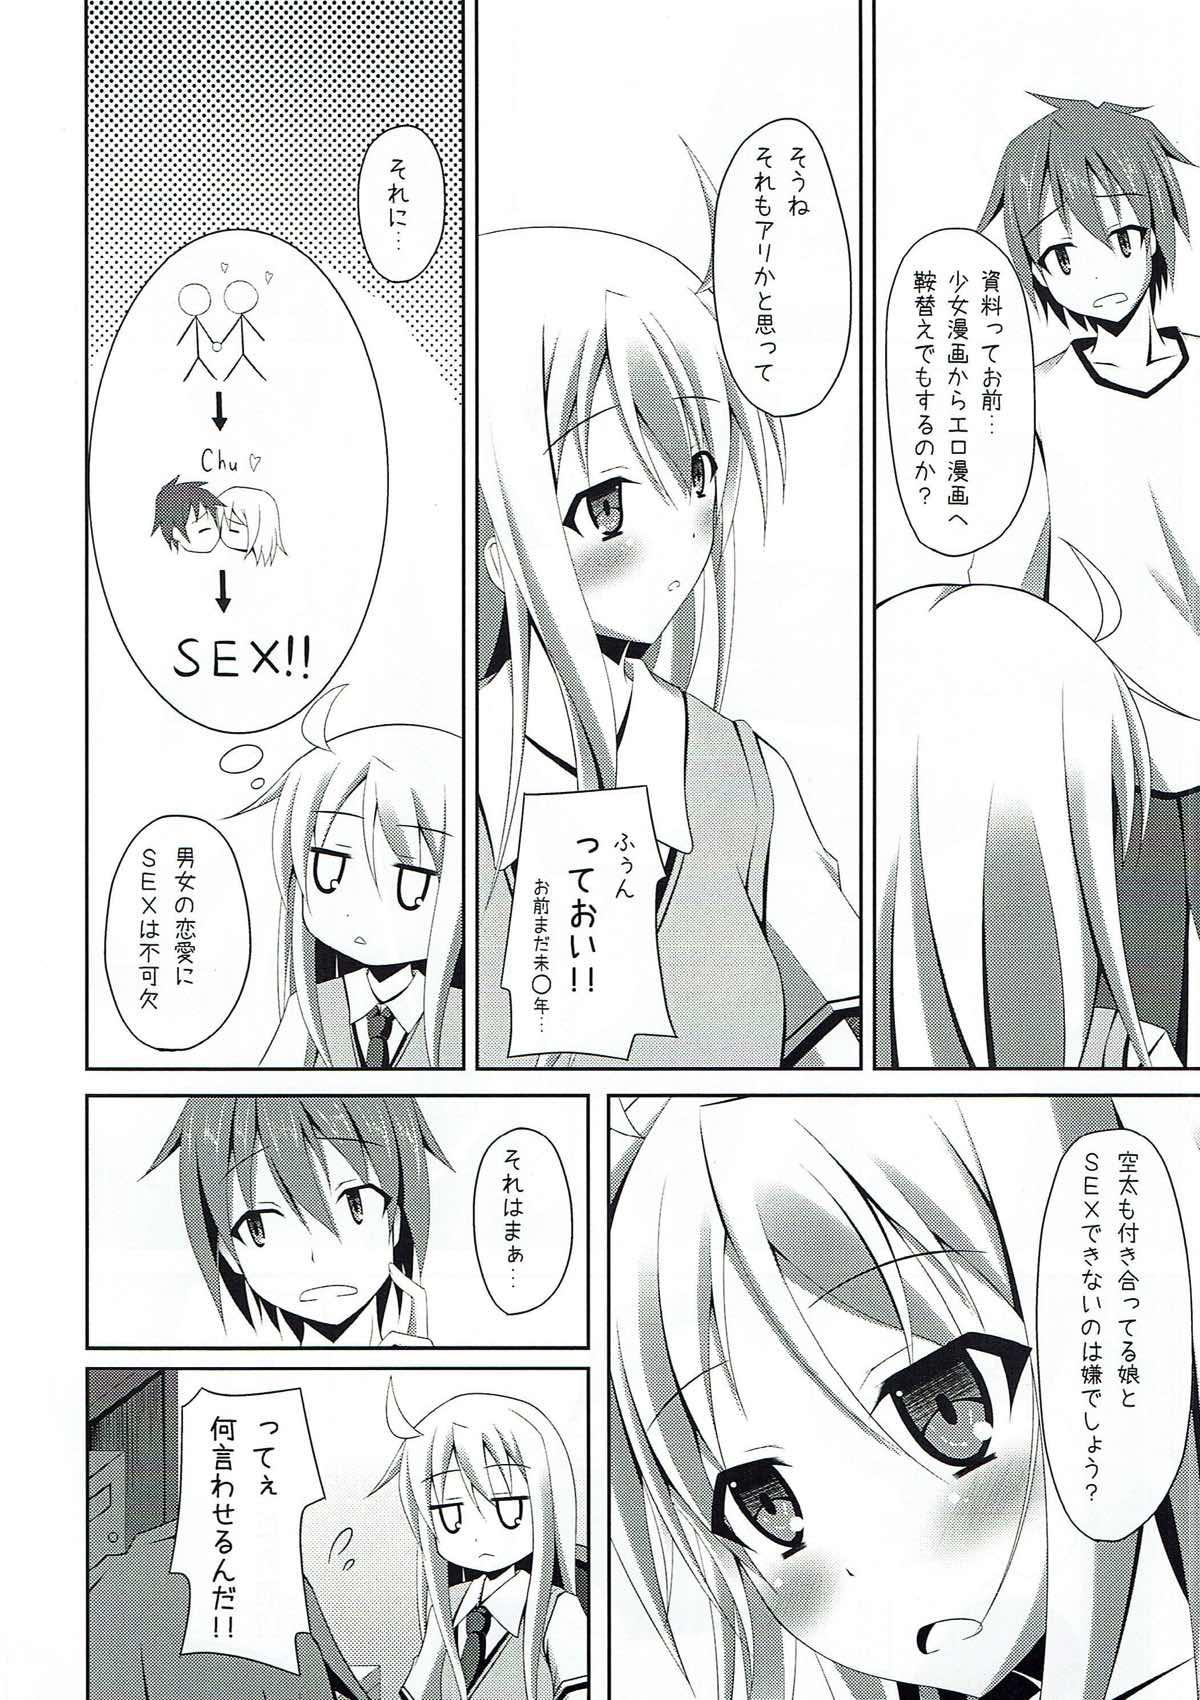 Sperm Sakurasou e Youkoso!! - Sakurasou no pet na kanojo Taiwan - Page 4